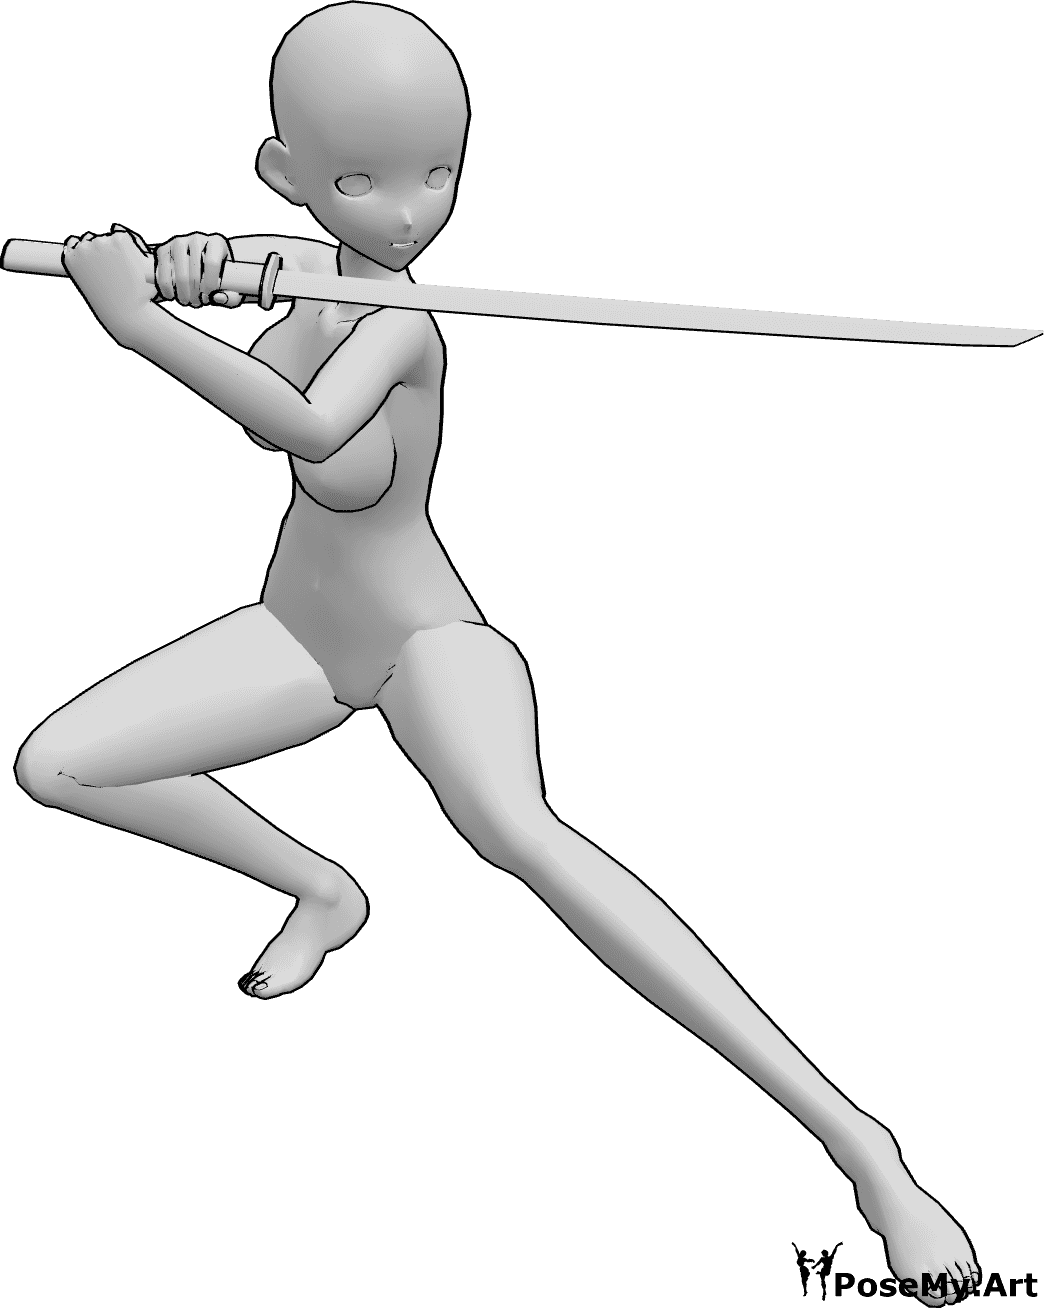 Referência de poses- Pose de ninja feminina de anime - A mulher anime segura a katana com as duas mãos, olhando para a esquerda, pronta para lutar